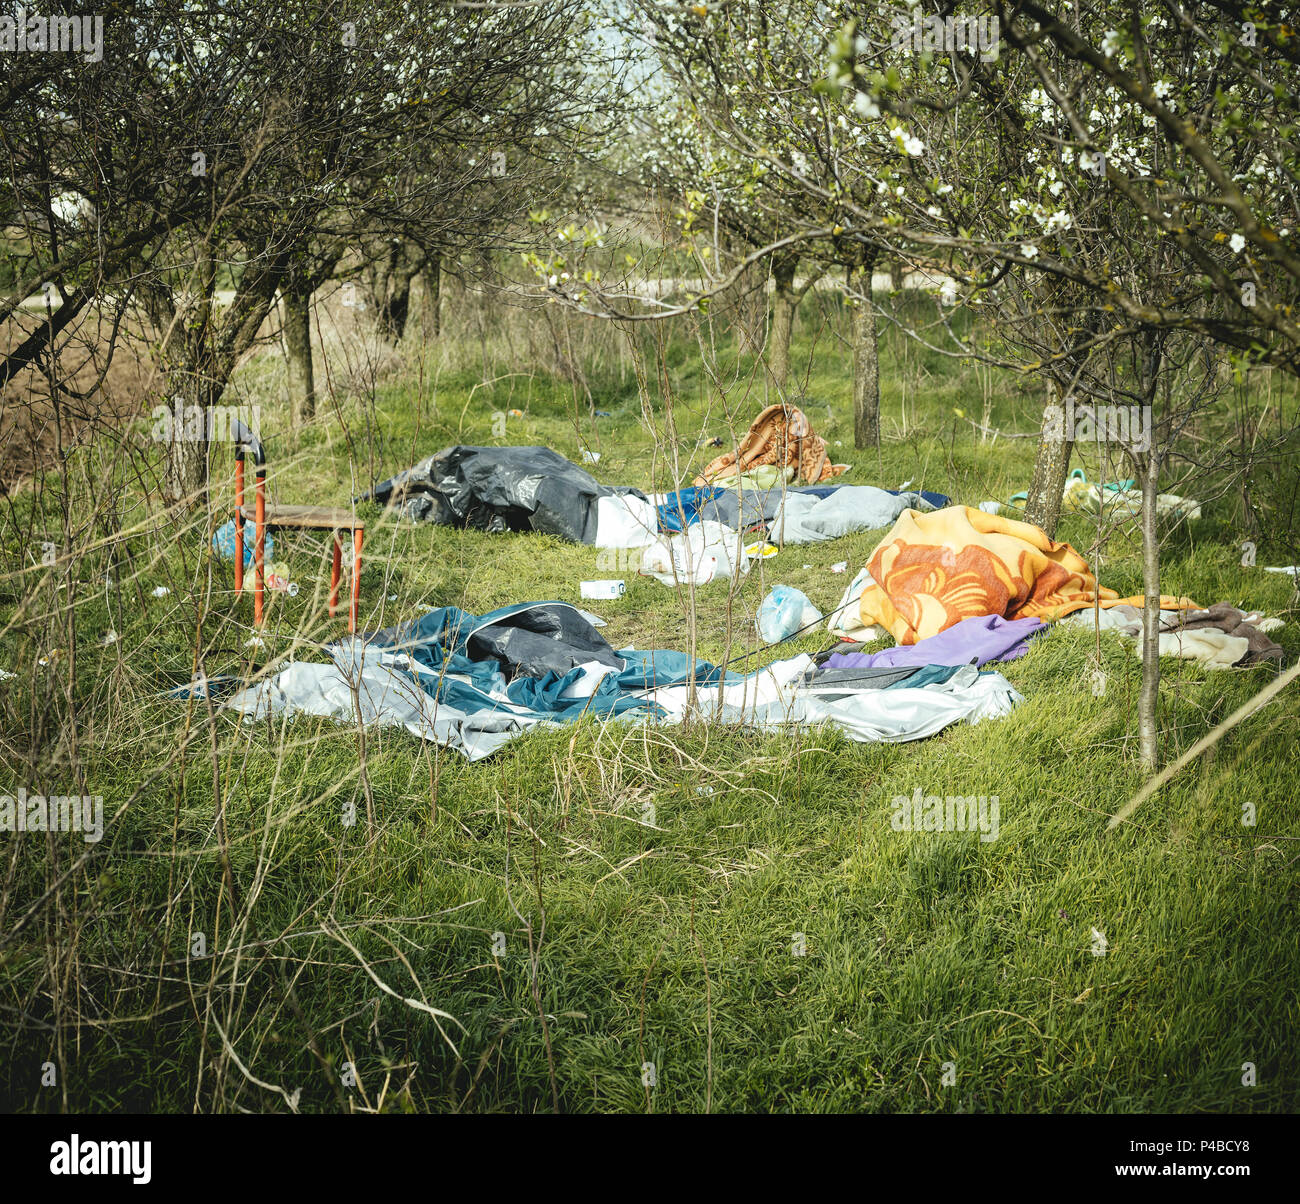 Flüchtlingslager von Sid an der Grenze zwischen Serbien und Kroatien. An die Grenze zu Ungarn nicht mehr eine Alternative ist, mehr und mehr Flüchtlinge versuchen, die Grenze zu Kroatien zu überqueren. Den Weg zur Grenze, 4 km entfernt vom Camp. Jede Nacht Leute versuchen, in die EU zu überqueren. Stockfoto